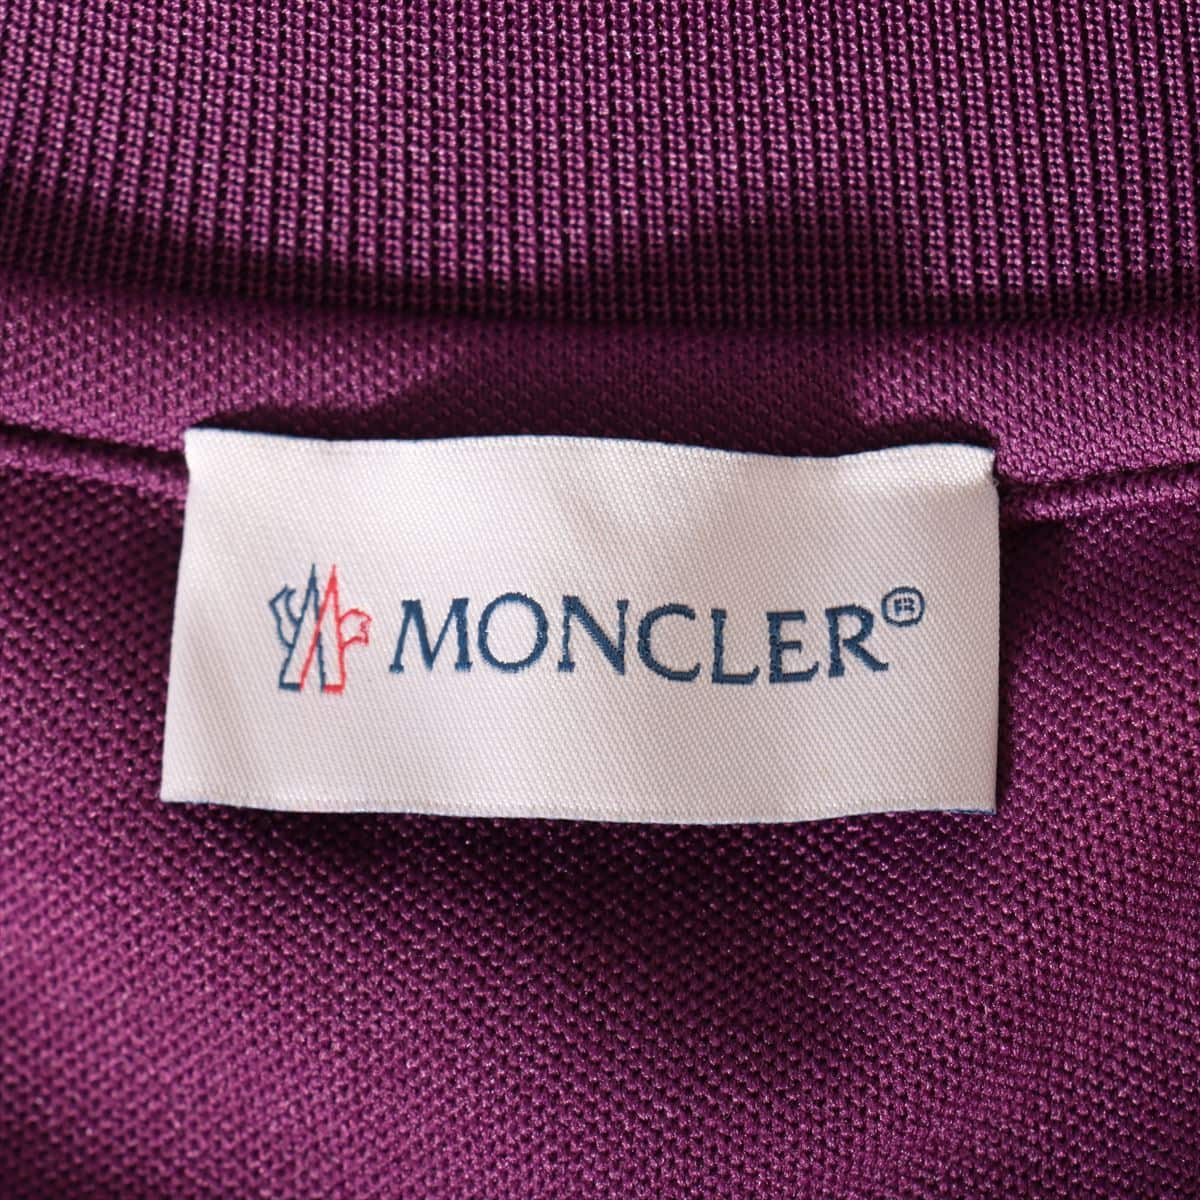 Moncler Genius Palm Angels 19-year Polyester Sweatsuit L Men's Purple